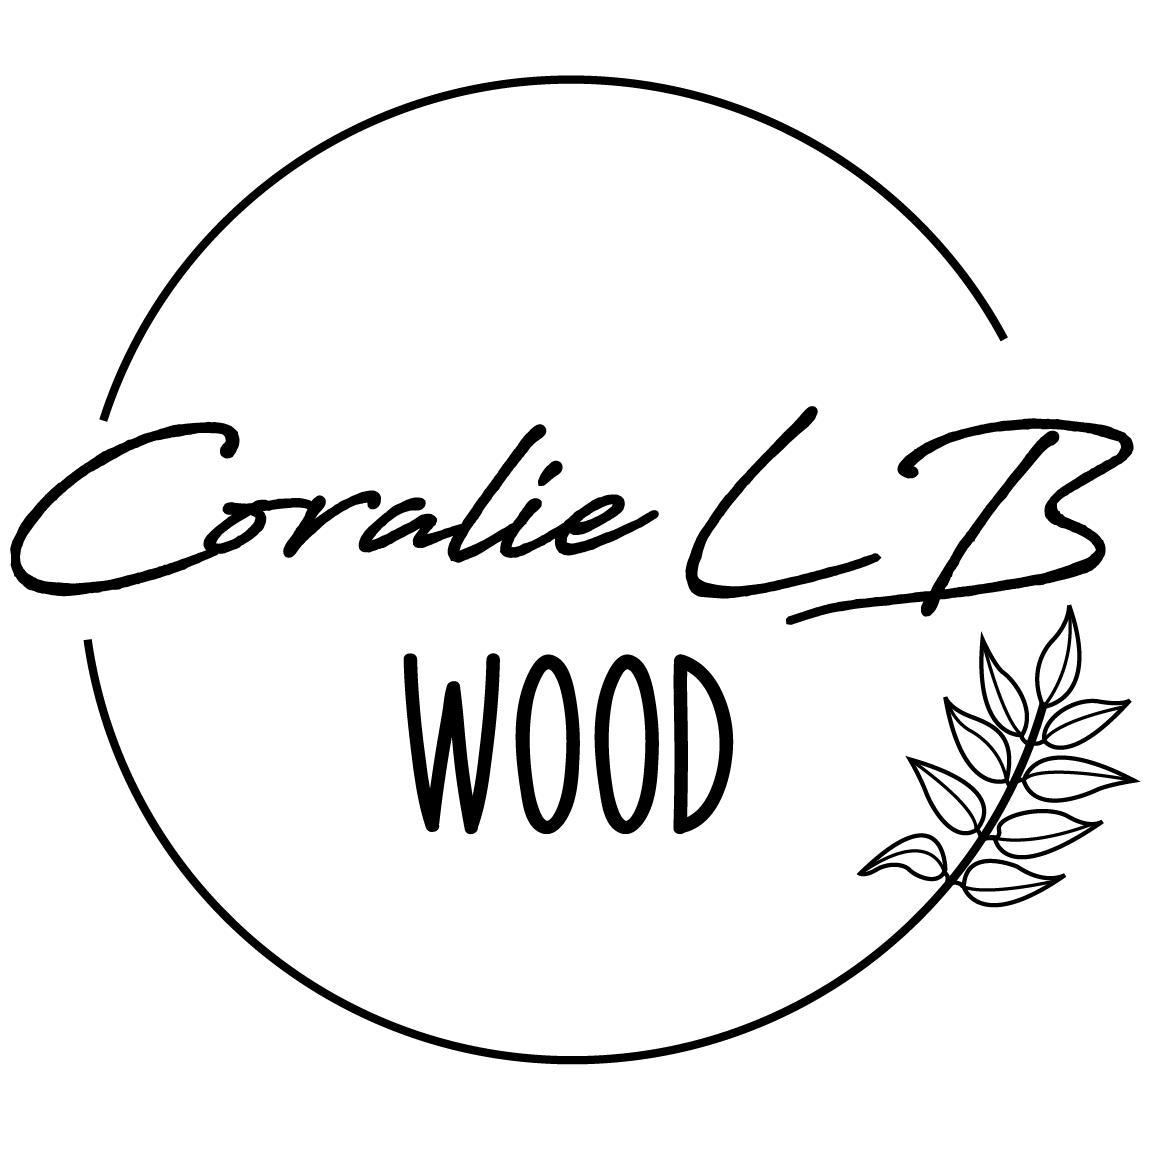 coralie_lb_wood